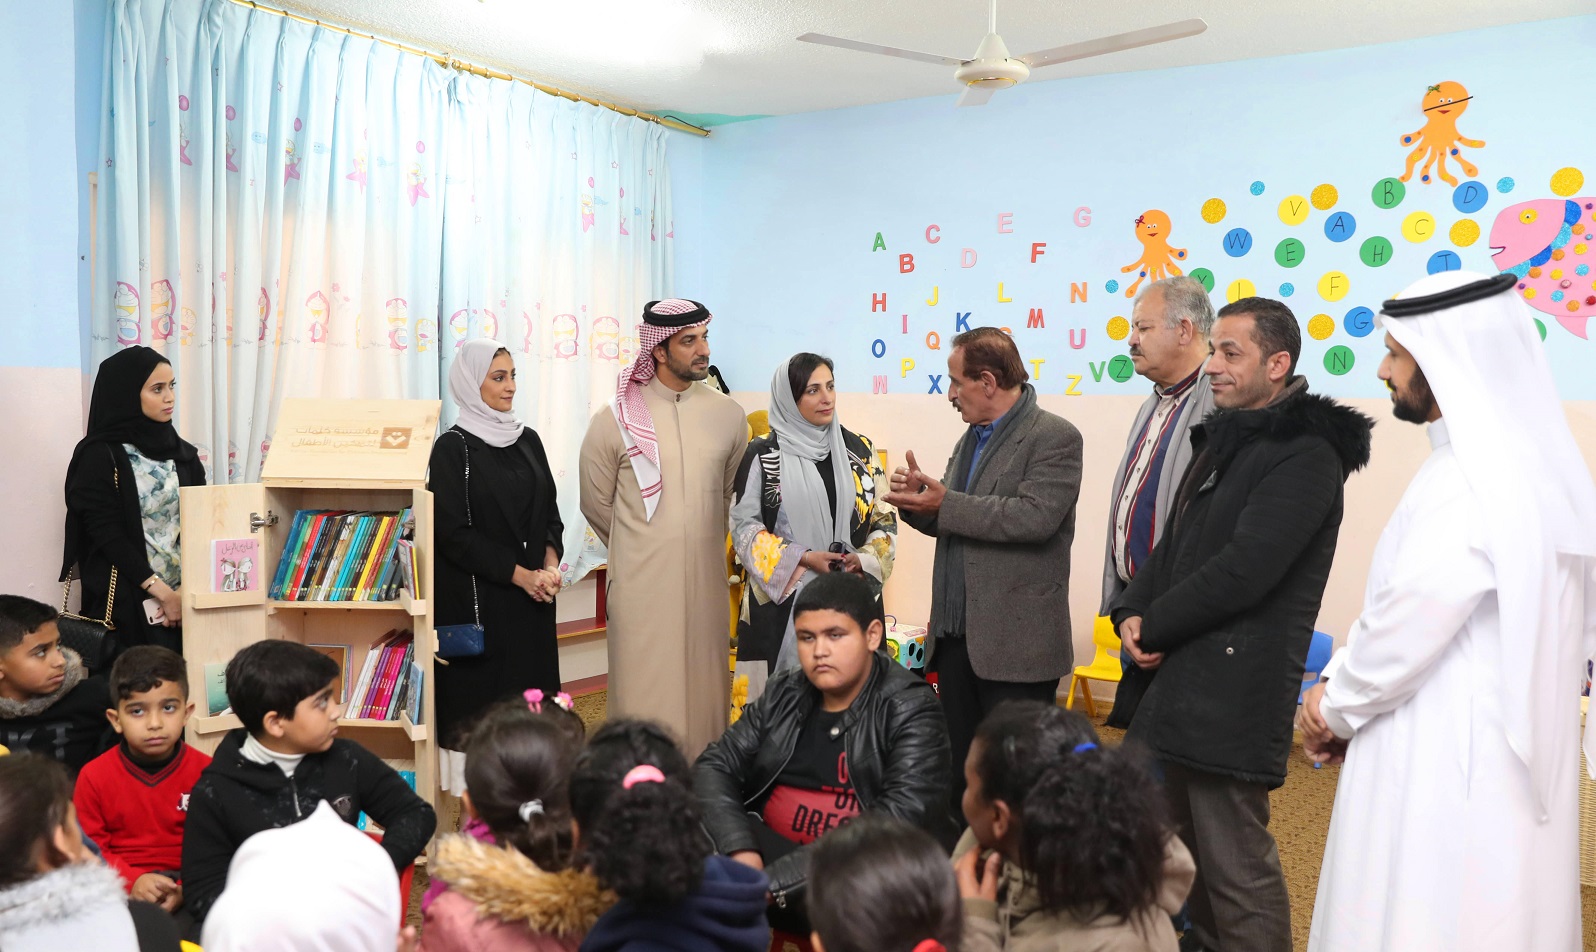 إهداء 700 كتاب إلى 7 مدارس فى الأردن لدعم اللاجئين والنازحين (1)